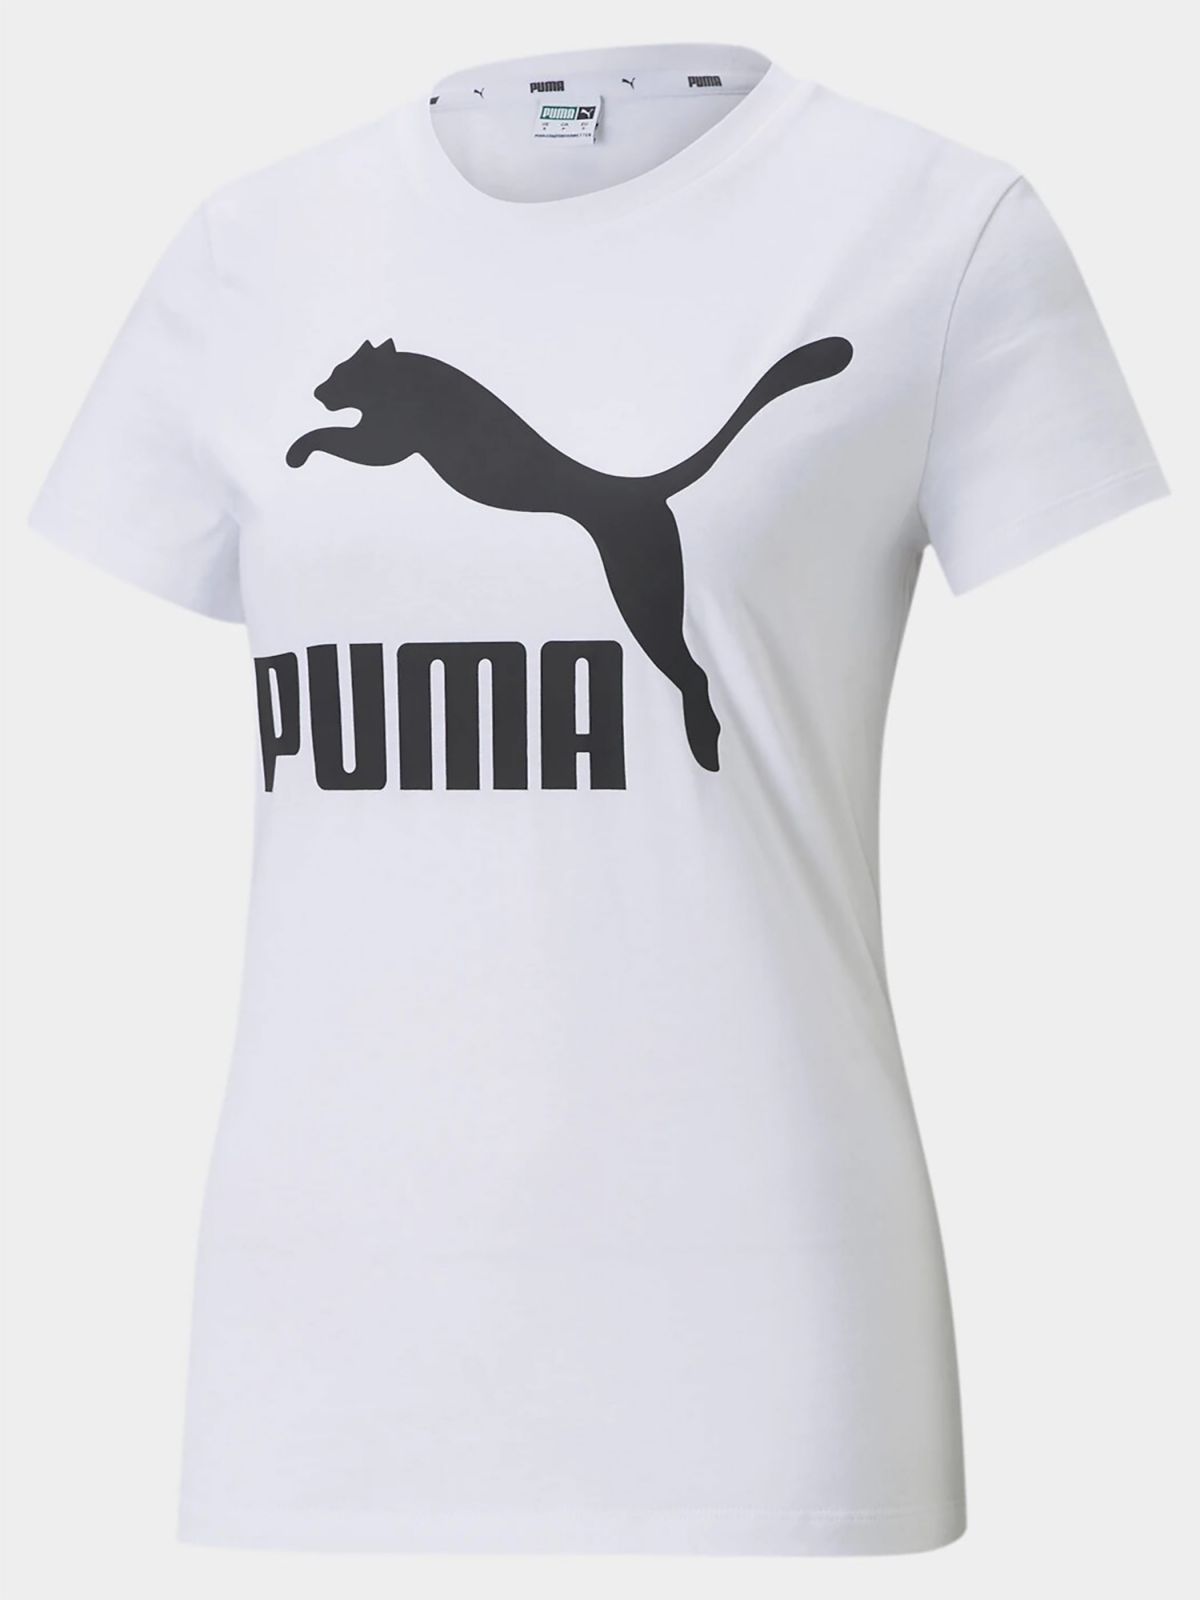  טישירט עם הדפס לוגו של PUMA